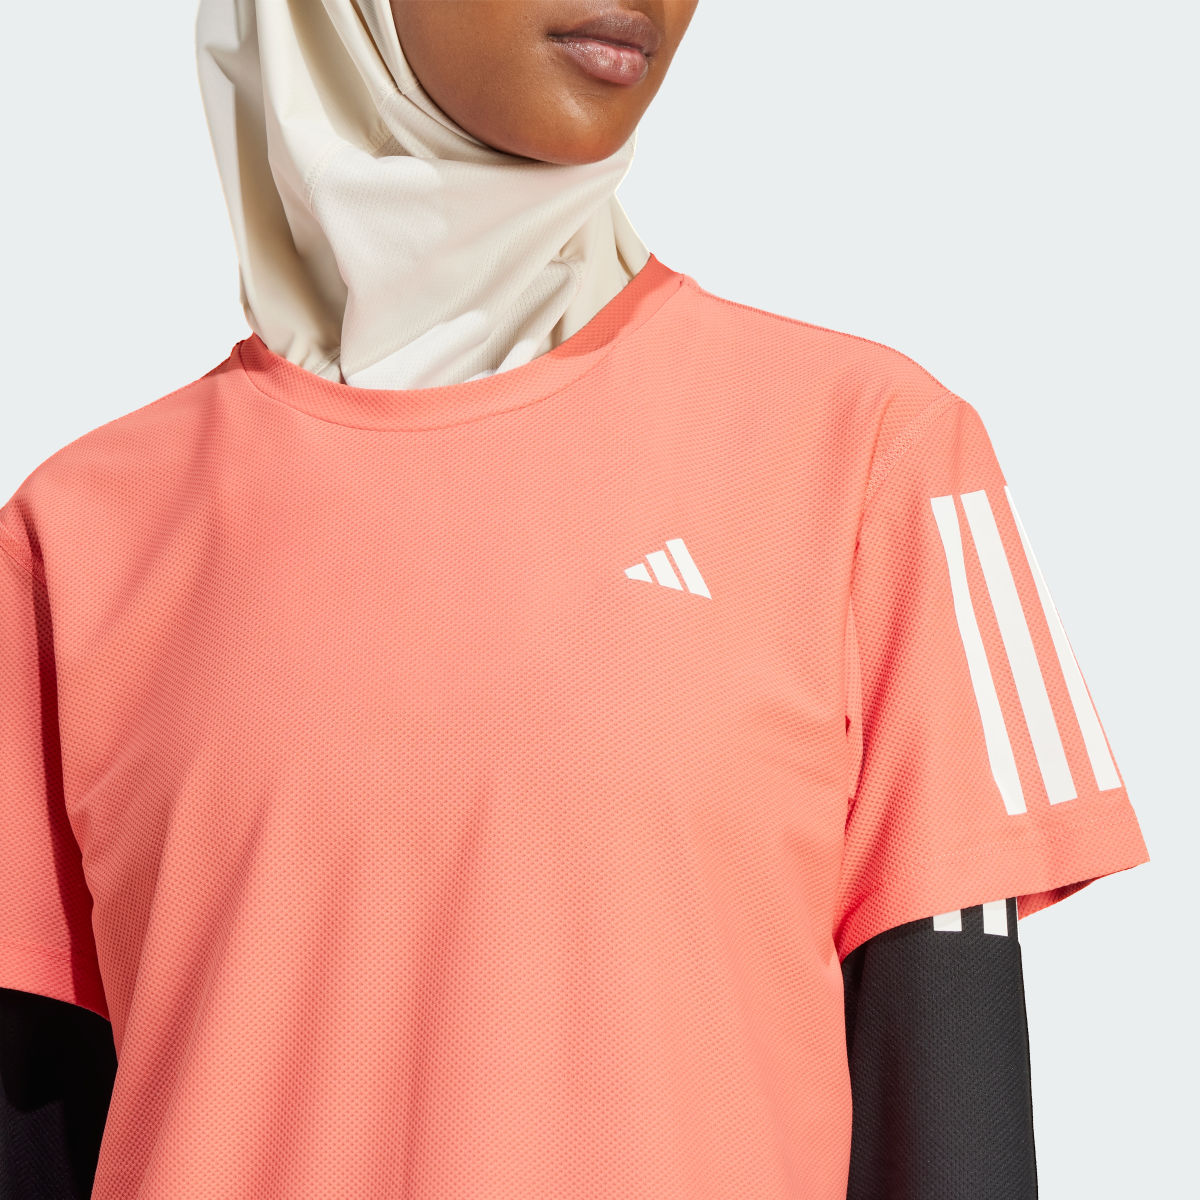 Adidas T-shirt Own the Run. 6